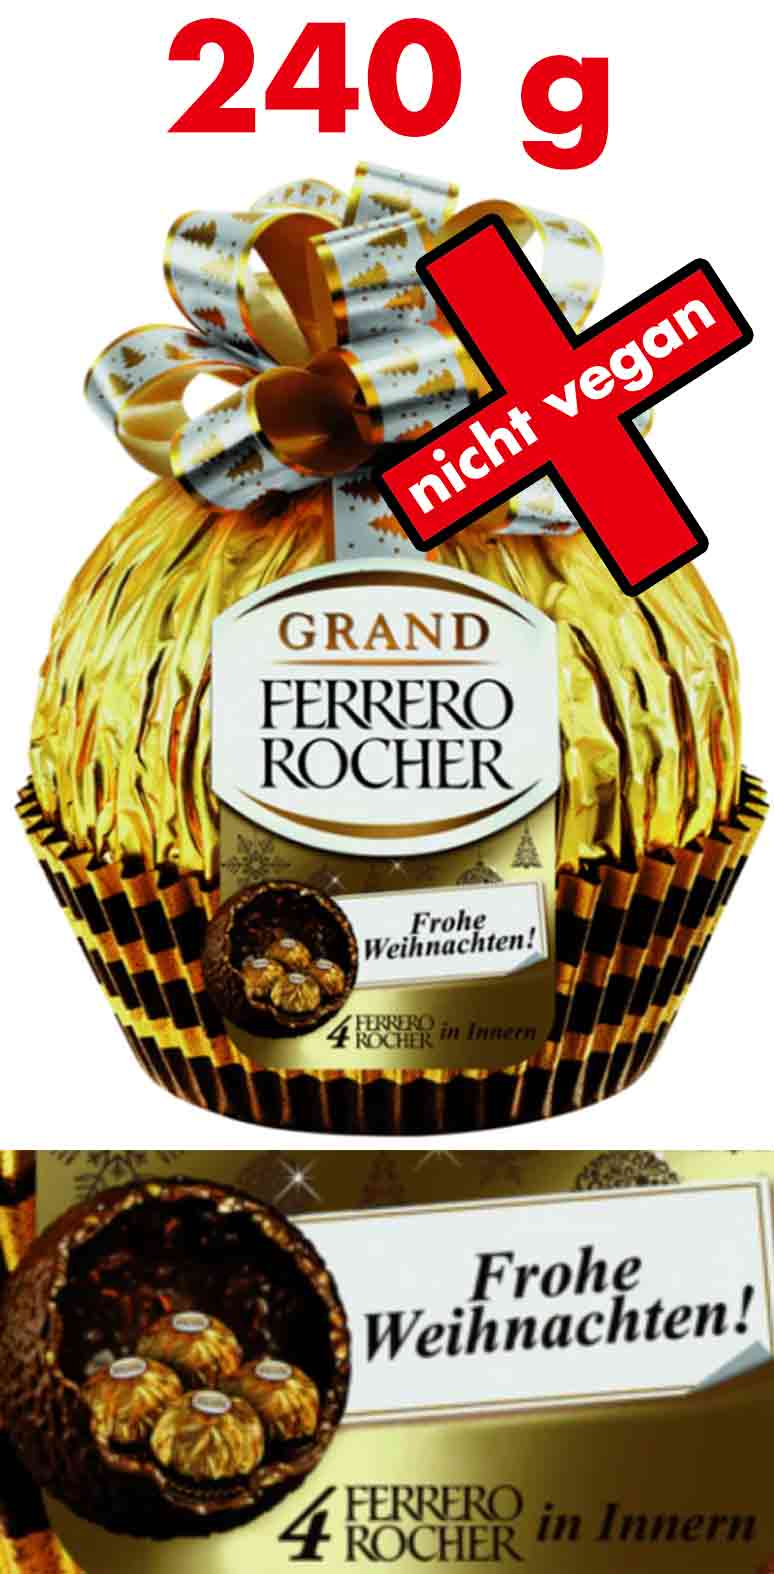 Das Grand Ferrero Rocher XXL 240 g